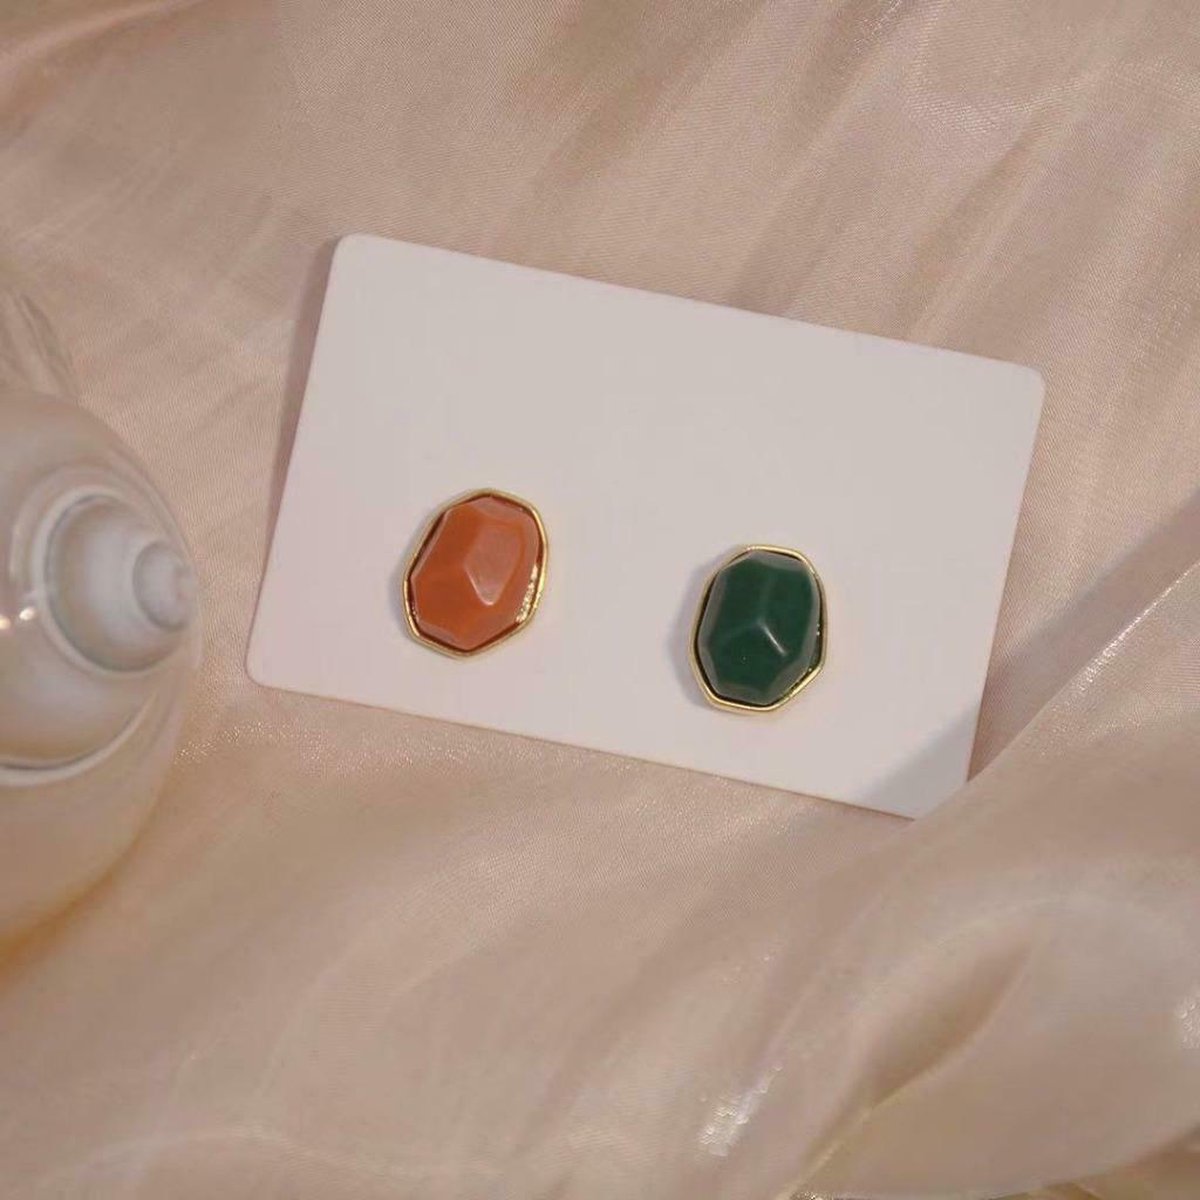 Nixnix - Vintage style oorbellen met stenen vorm